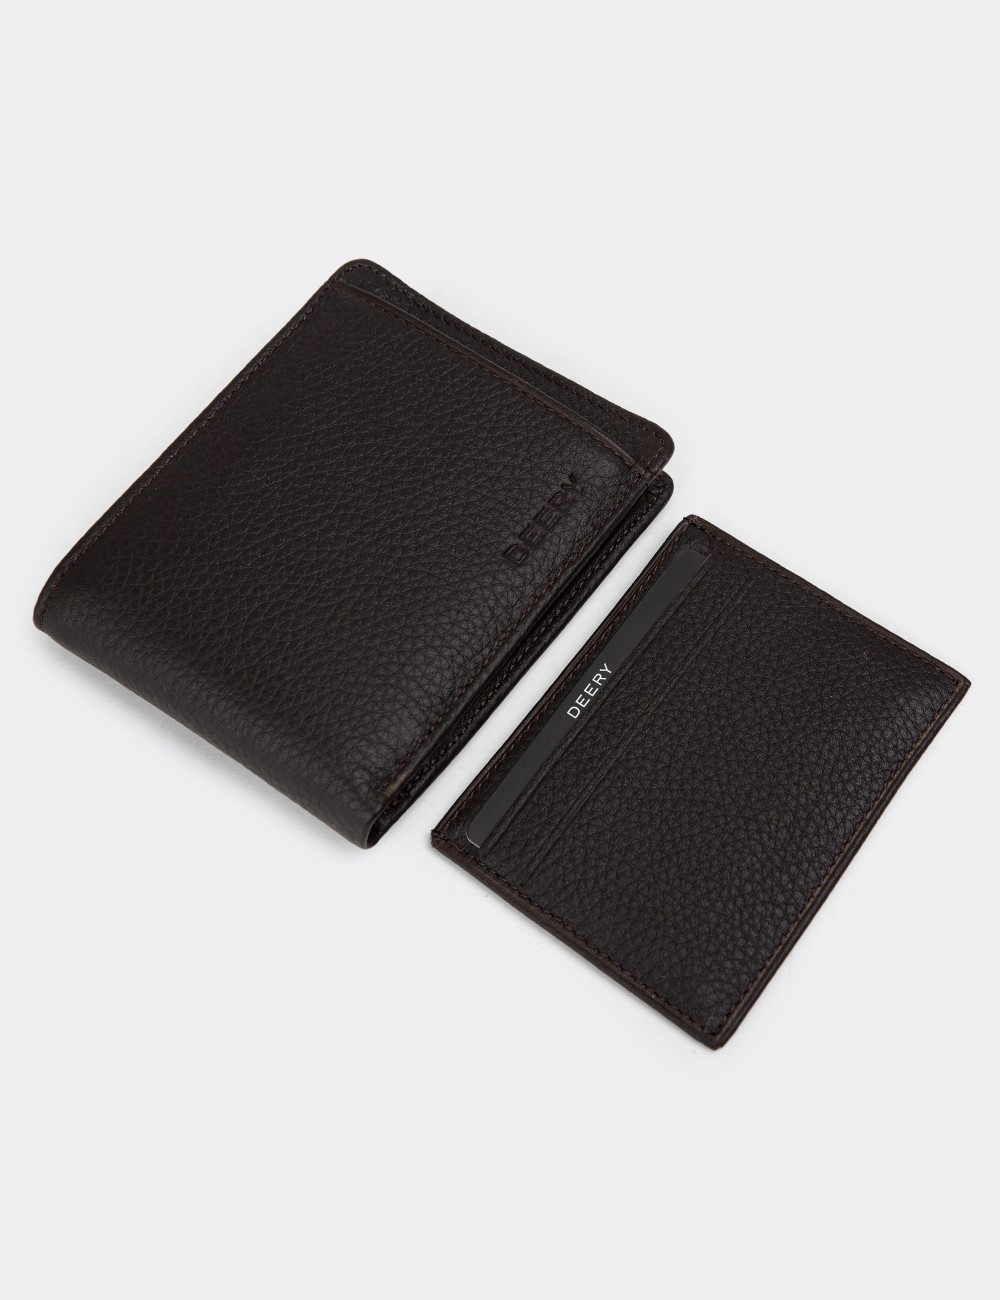 Leather Brown Men's Wallet - 00340MKHVZ01